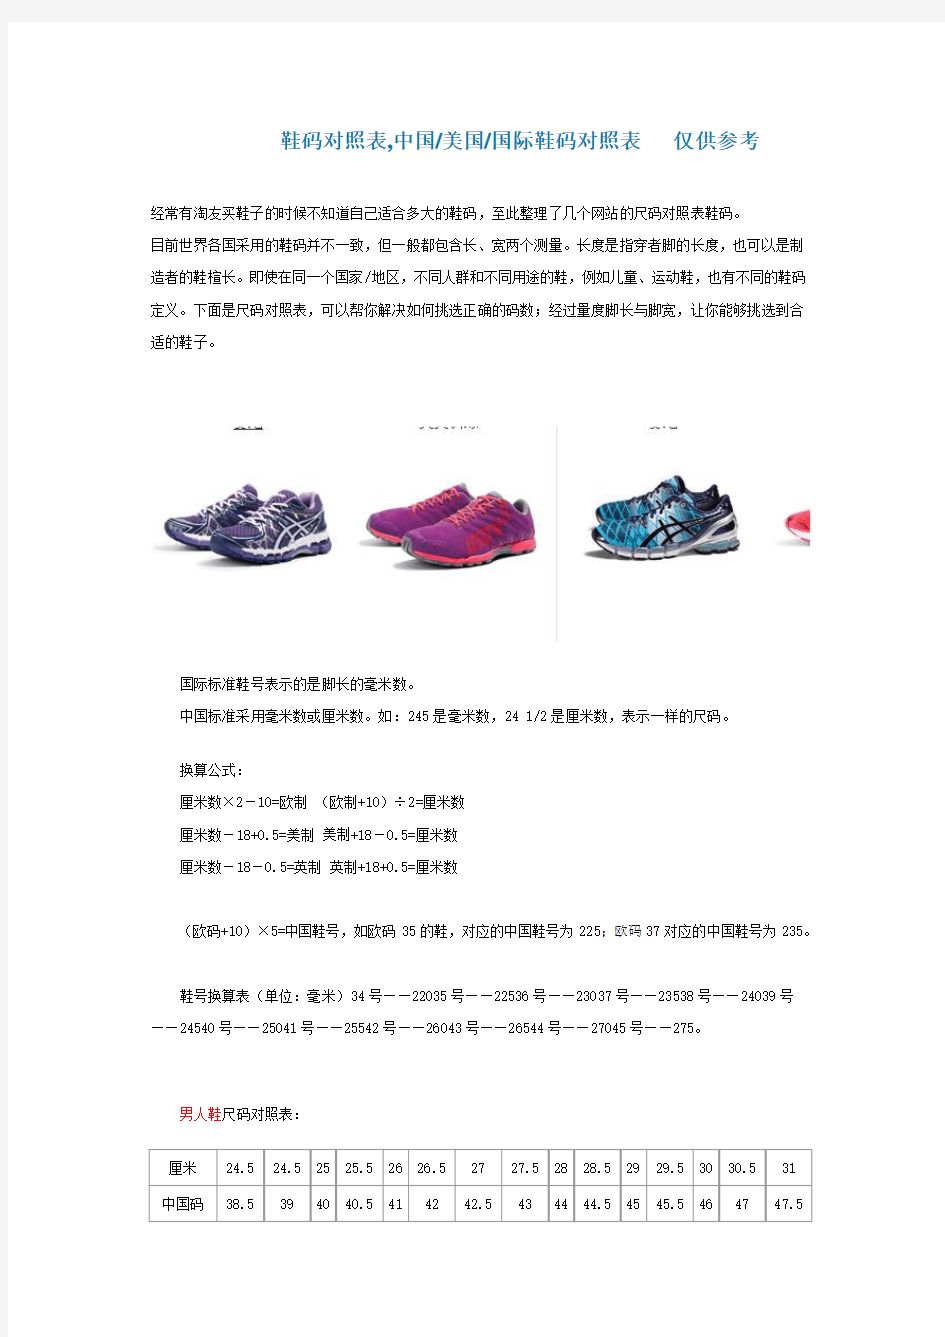 鞋码对照表,中国美国国际鞋码对照表